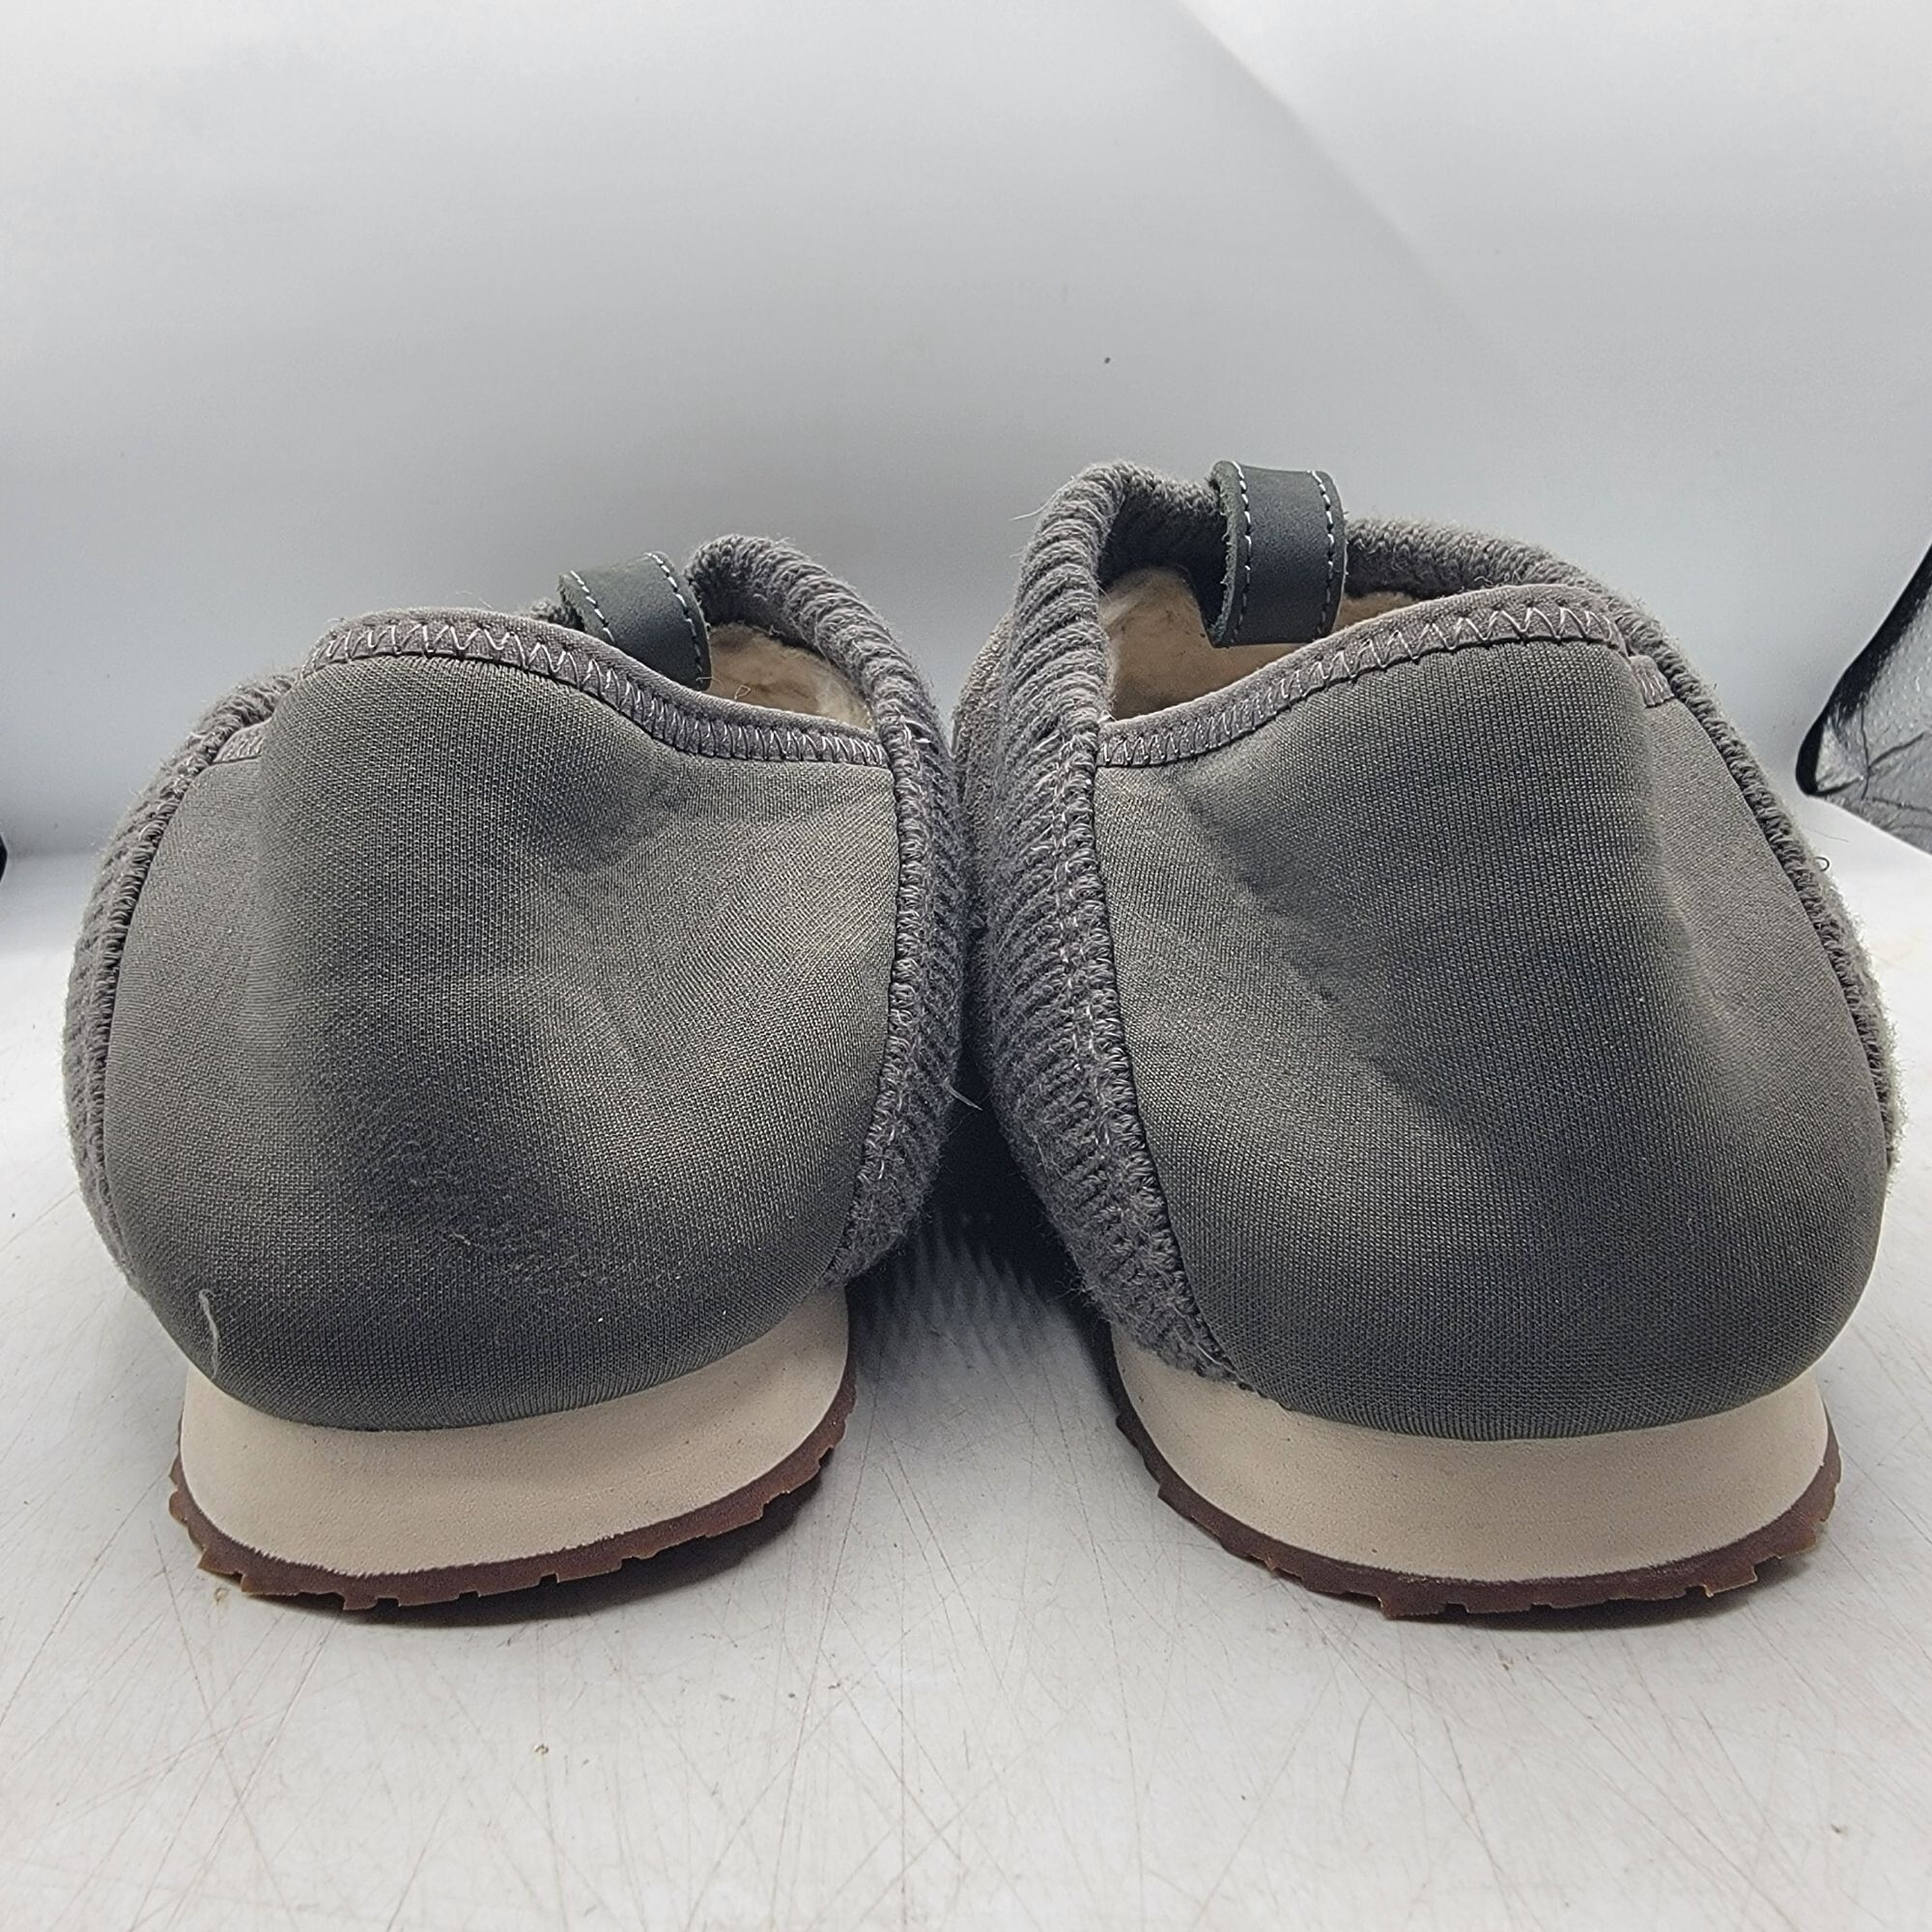 Teva Teva ReEmber Plushed Mens 11 Gray Slipper Shoes Comfort Line Size US 11 / EU 44 - 6 Thumbnail